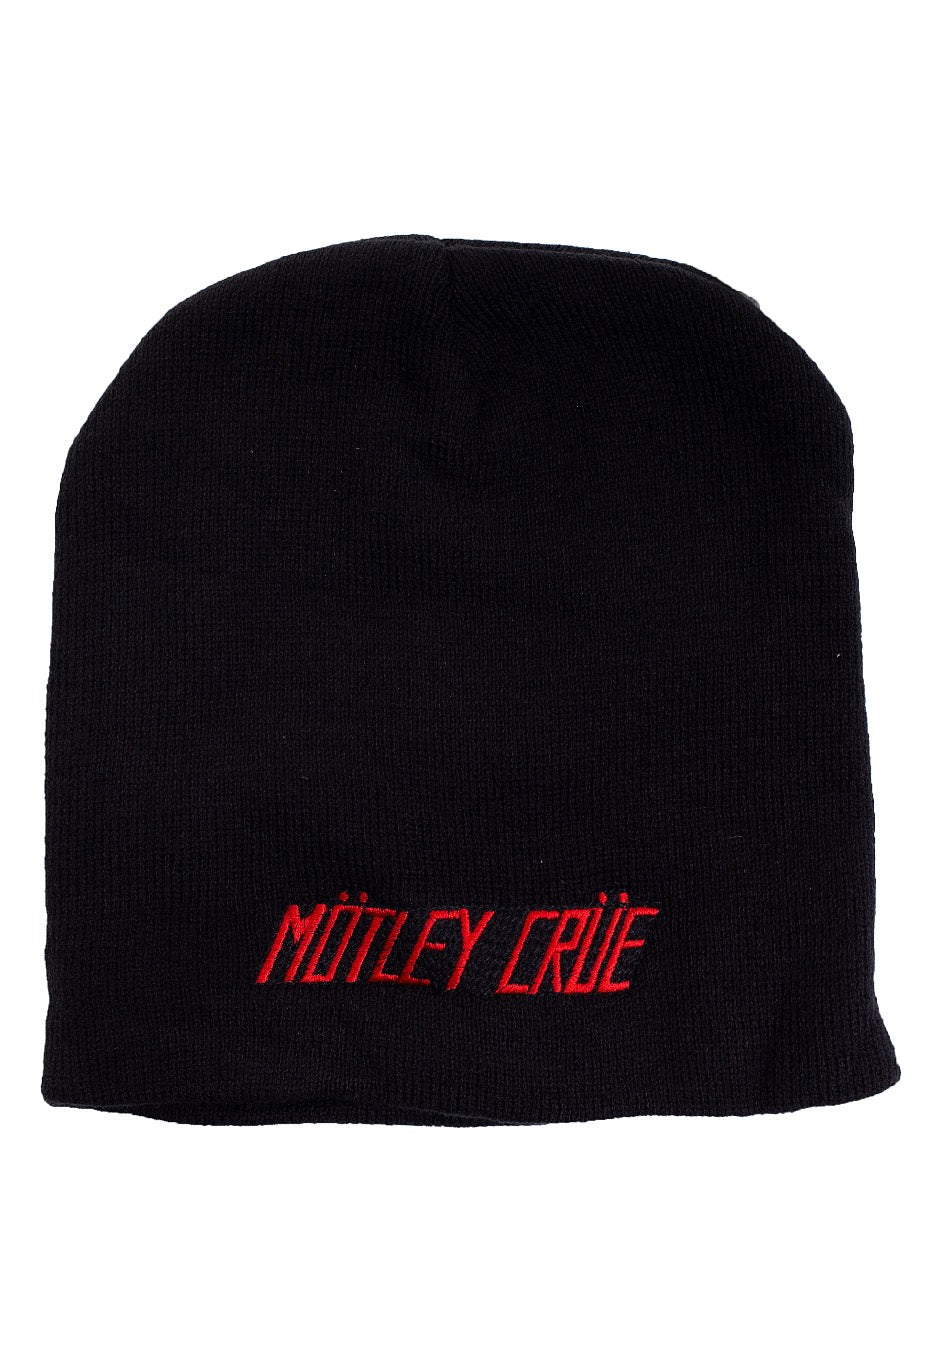 Mötley Crüe - Logo - Beanie